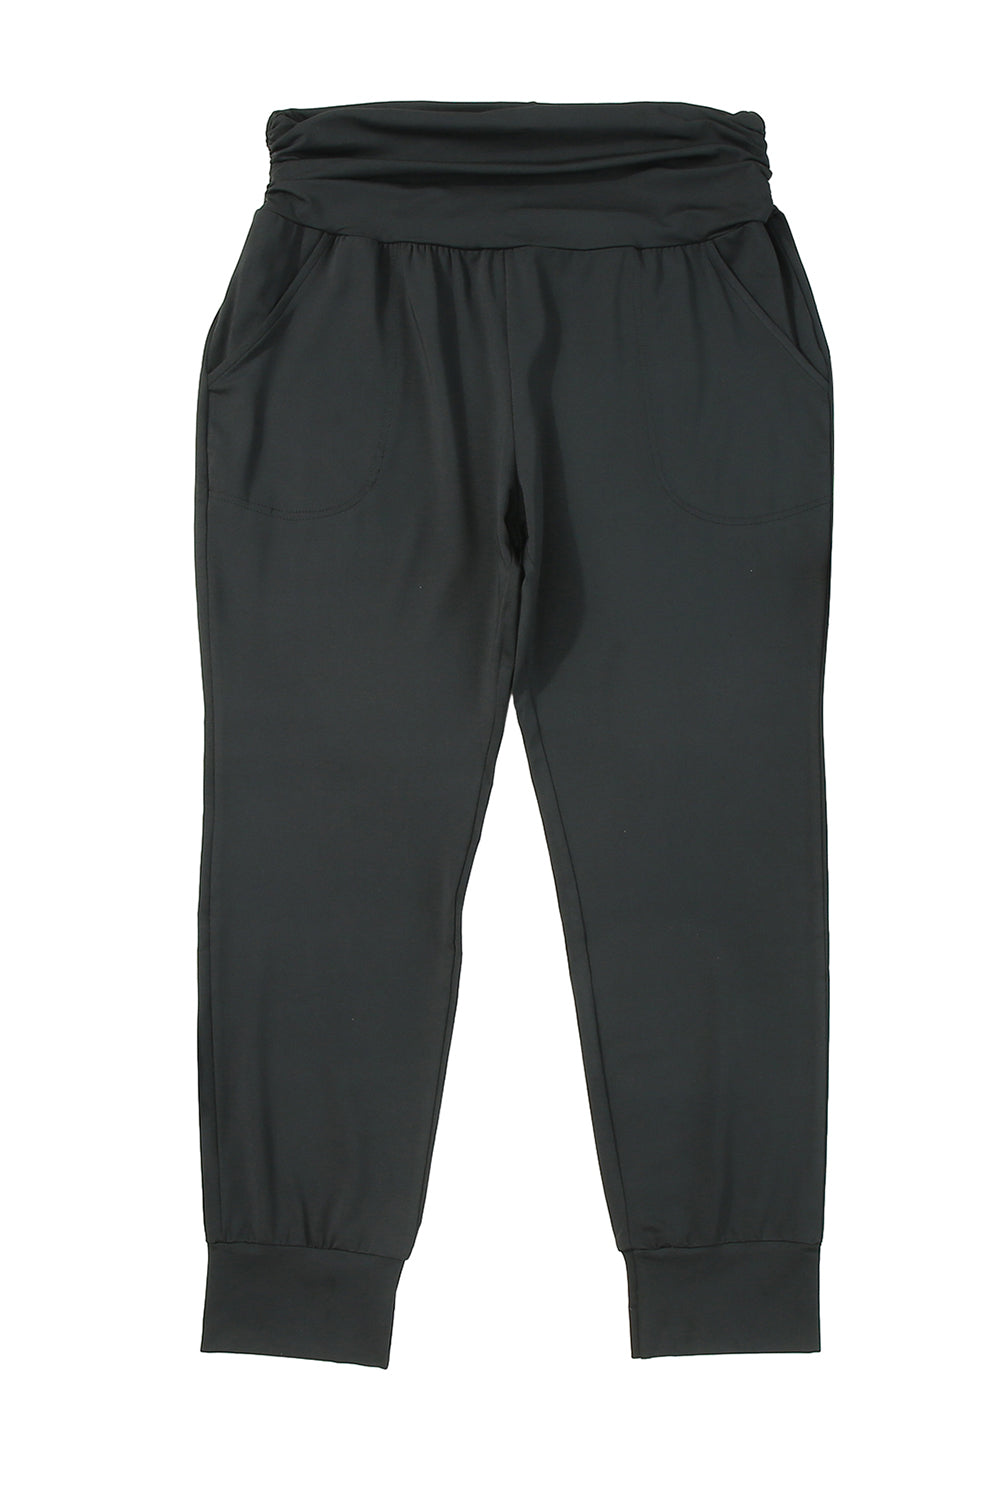 Crne uske hlače s džepovima i visokim strukom veće veličine